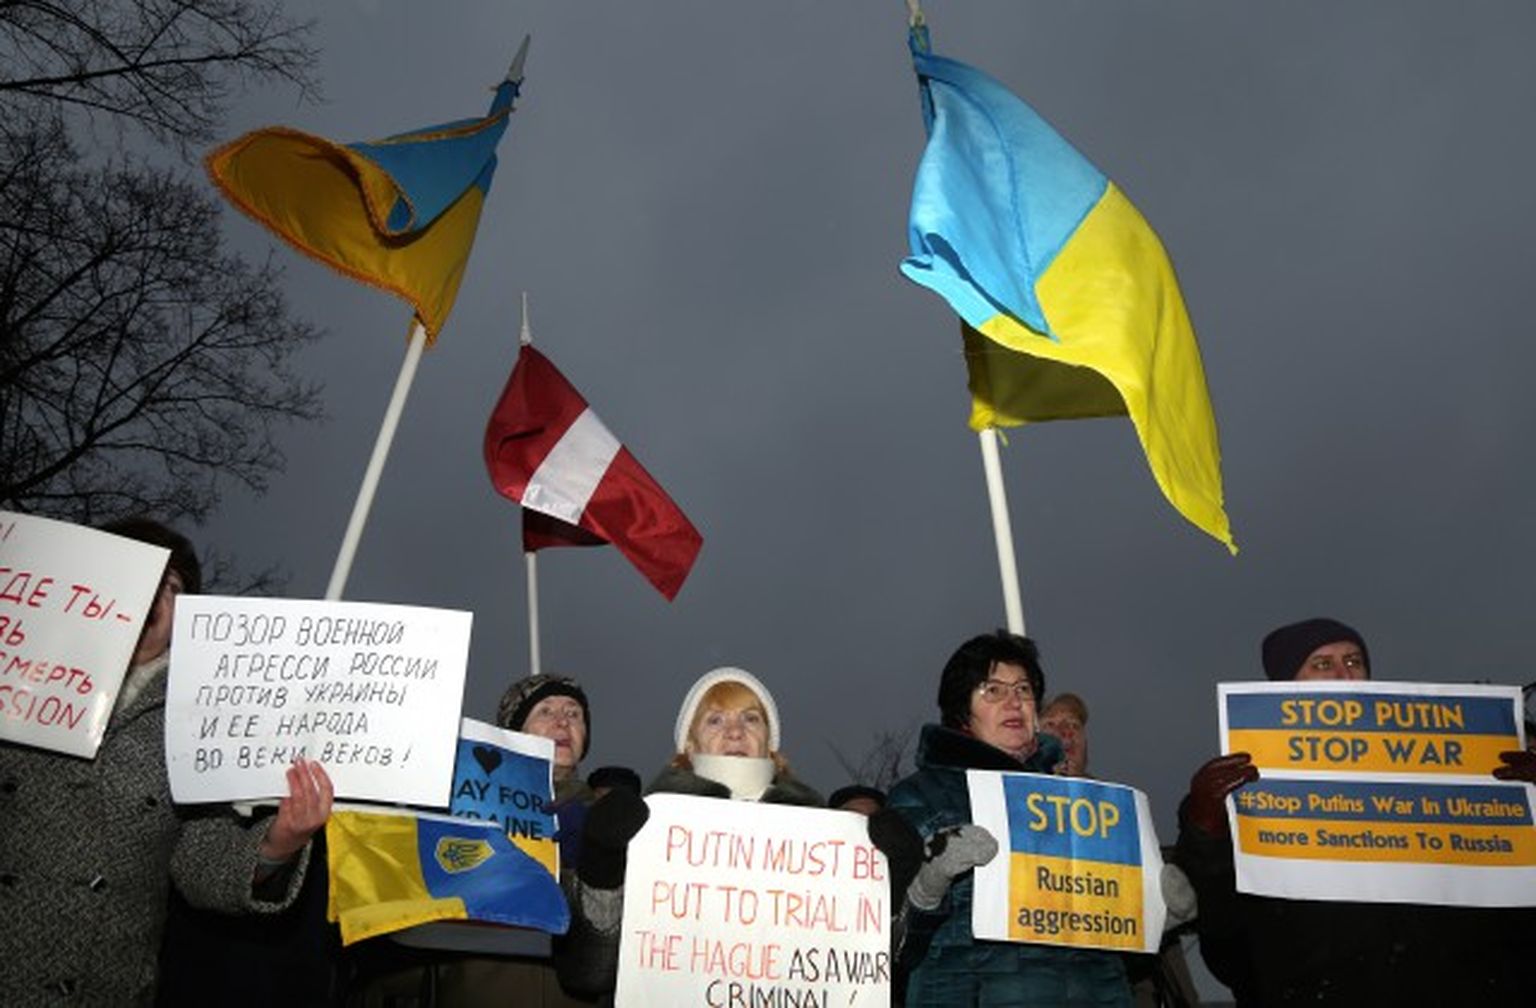 Pretim Krievijas vēstniecībai norisinās biedrības "Latvijas Ukraiņu kongress" rīkotā protesta akcija pret Krievijas agresiju Ukrainā